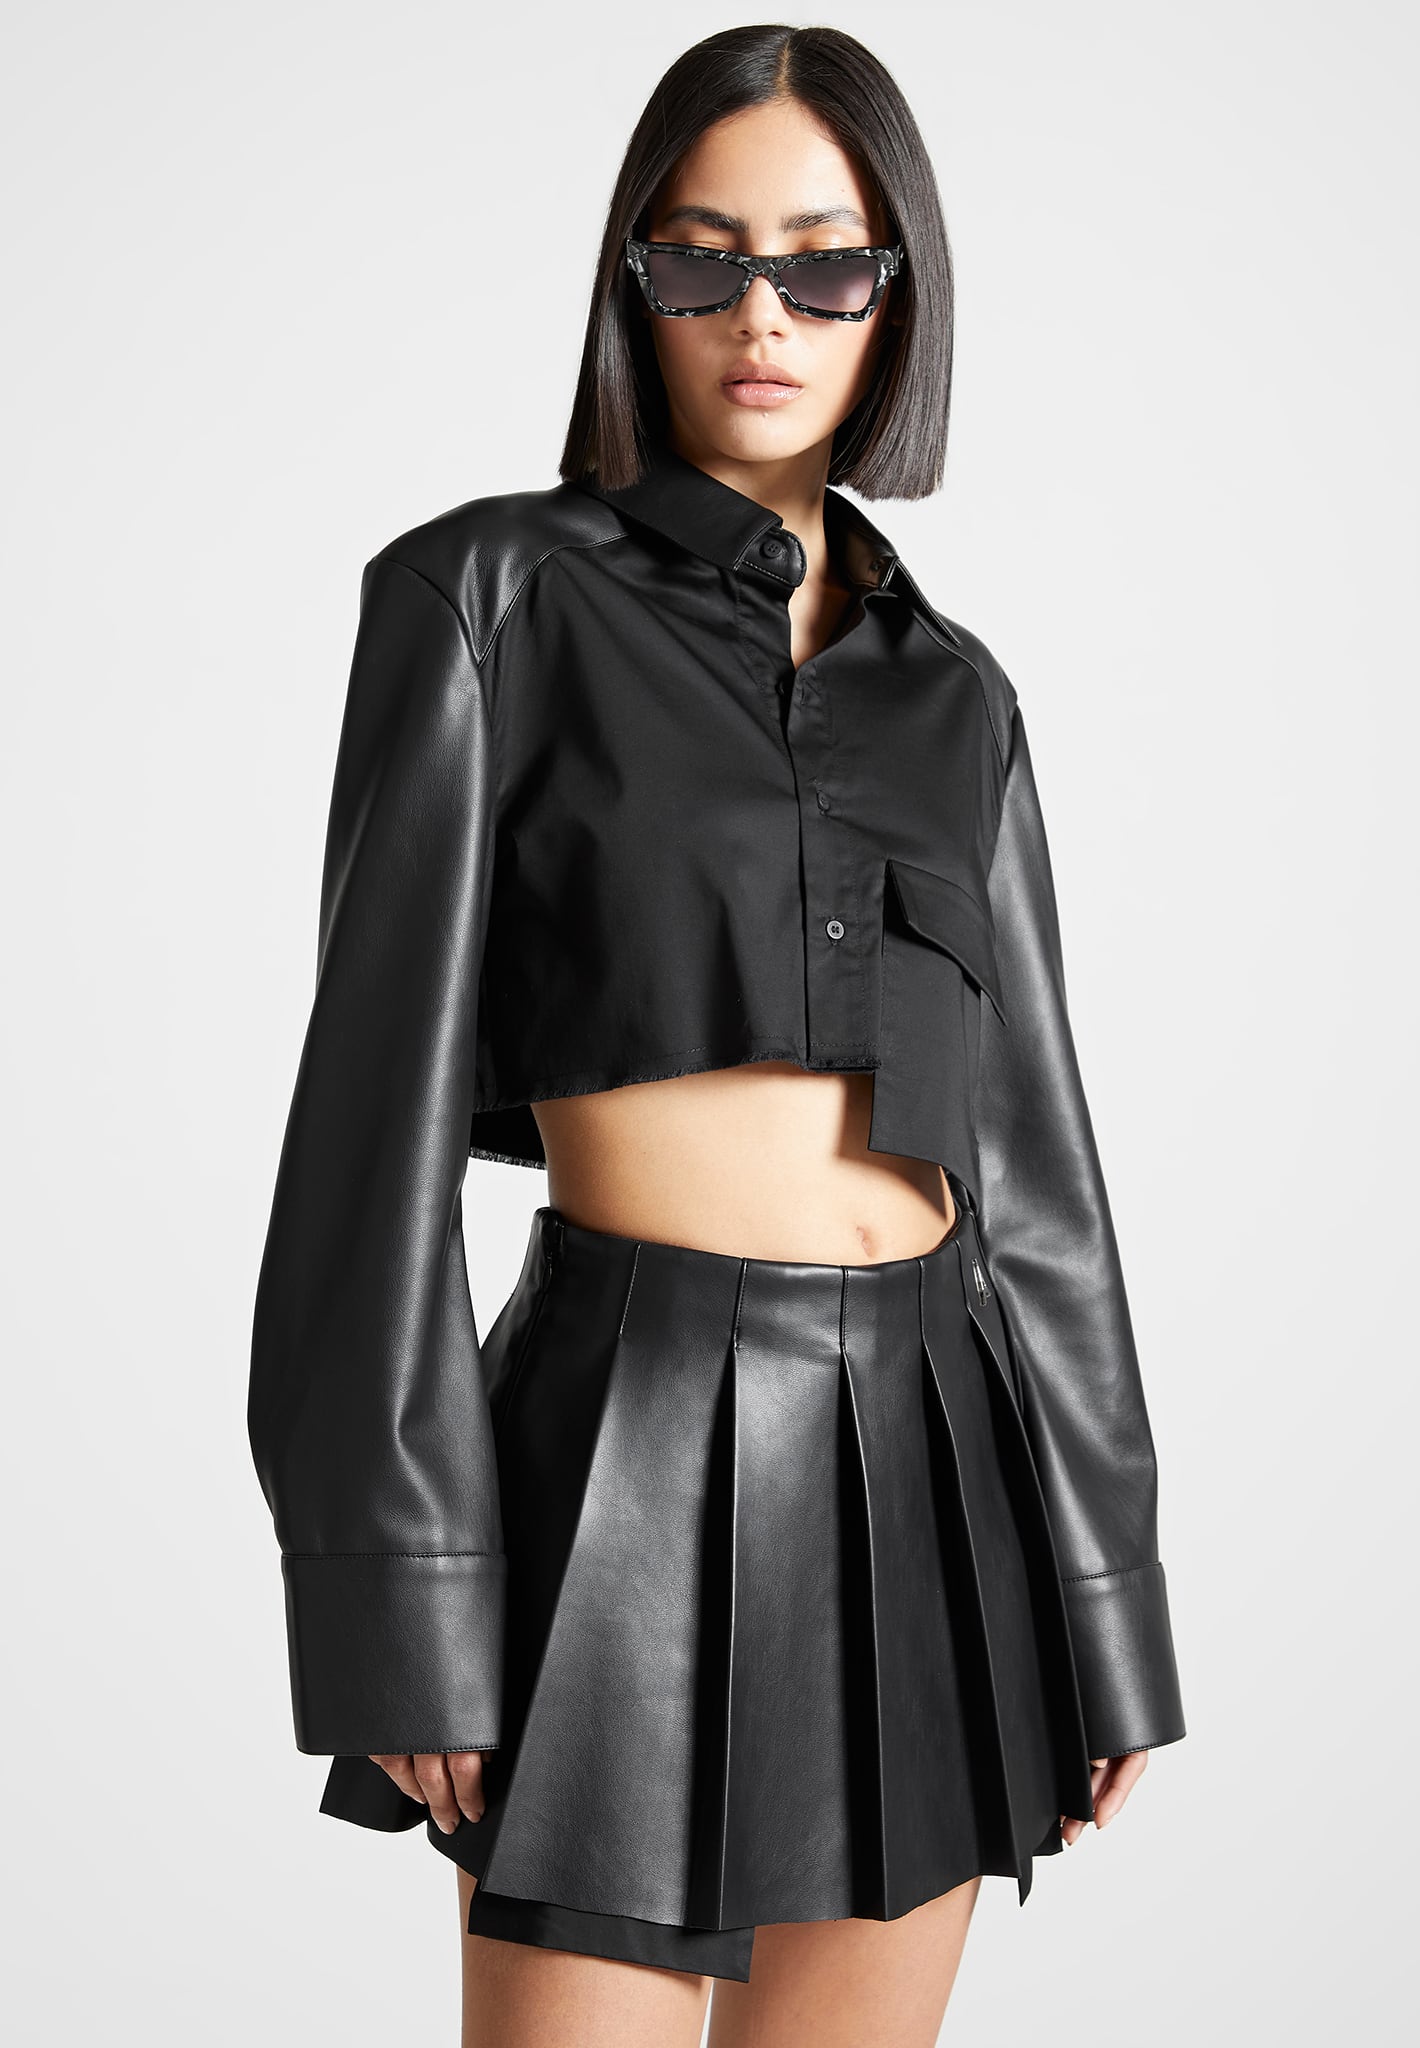 Manier De Voir Womens Leather Corset Crop Top Black Size 4 - Dutch